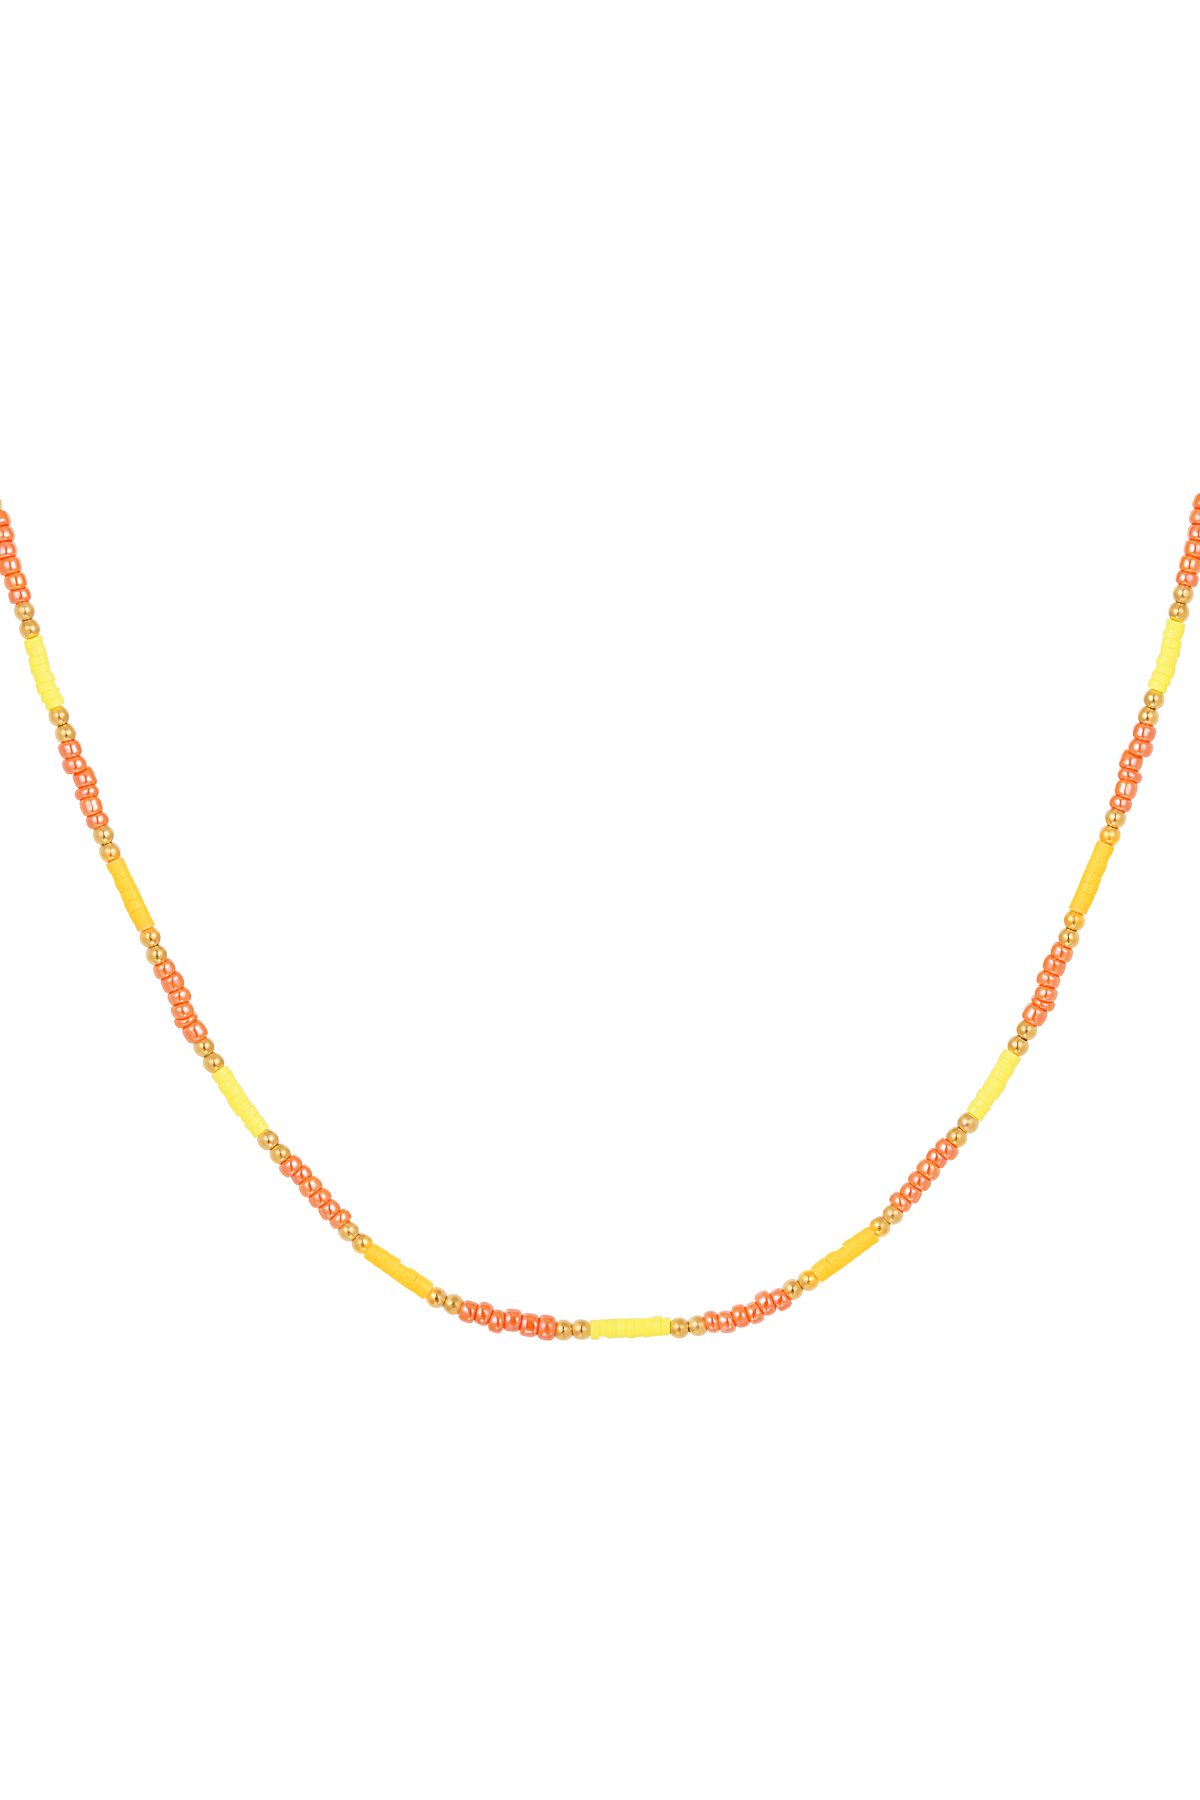 Collana piccole perle colorate - giallo/arancione 